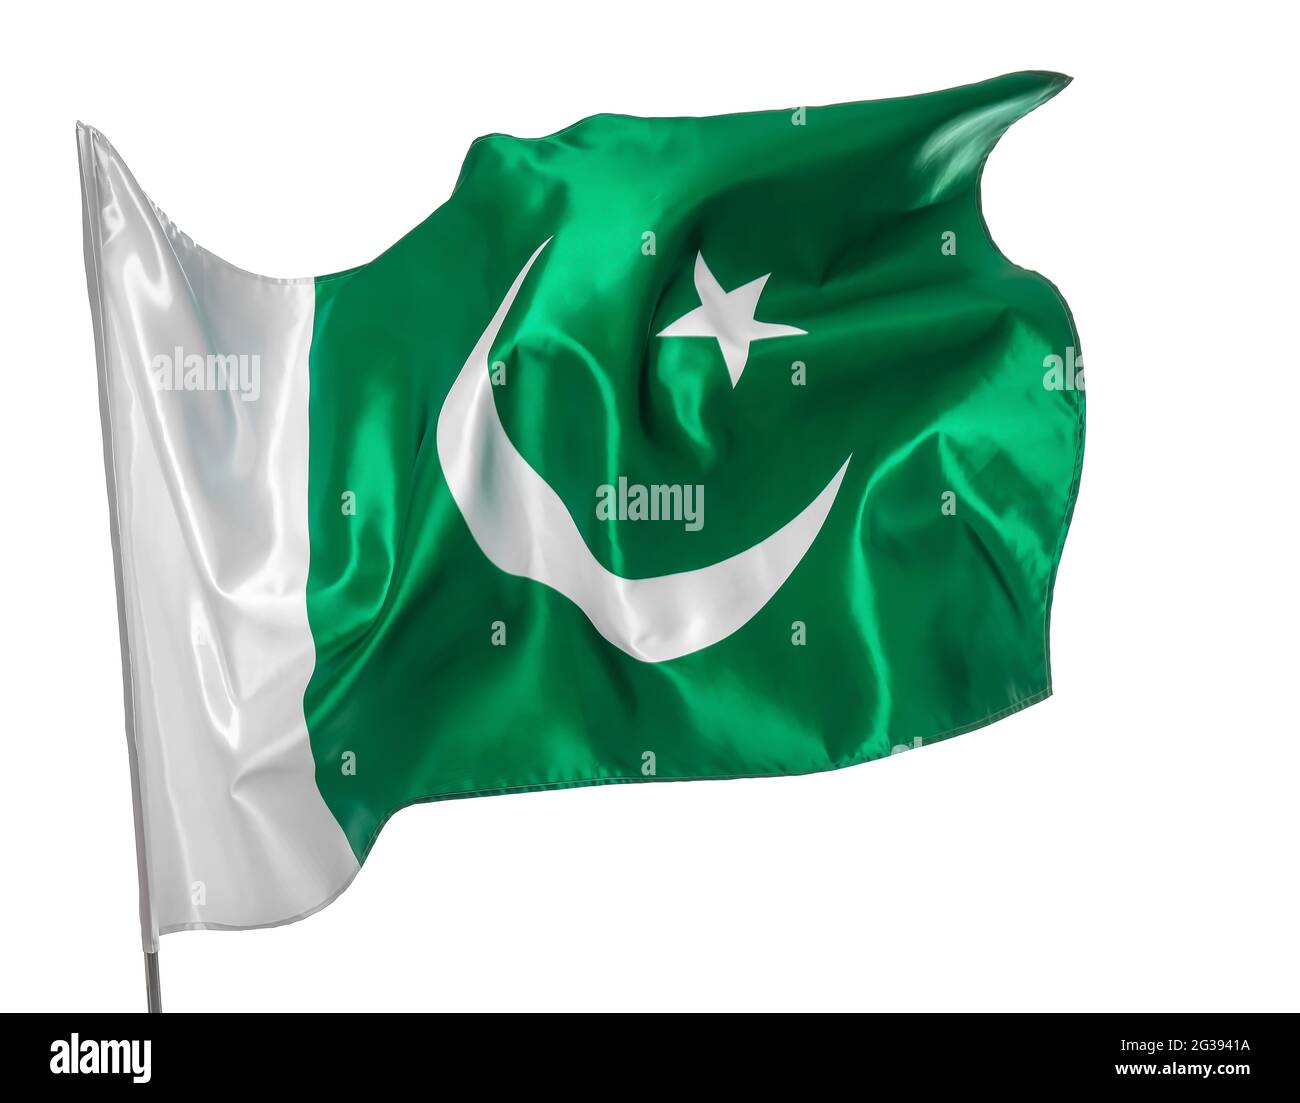 Pakistan flag on white background Stock Photo - Alamy